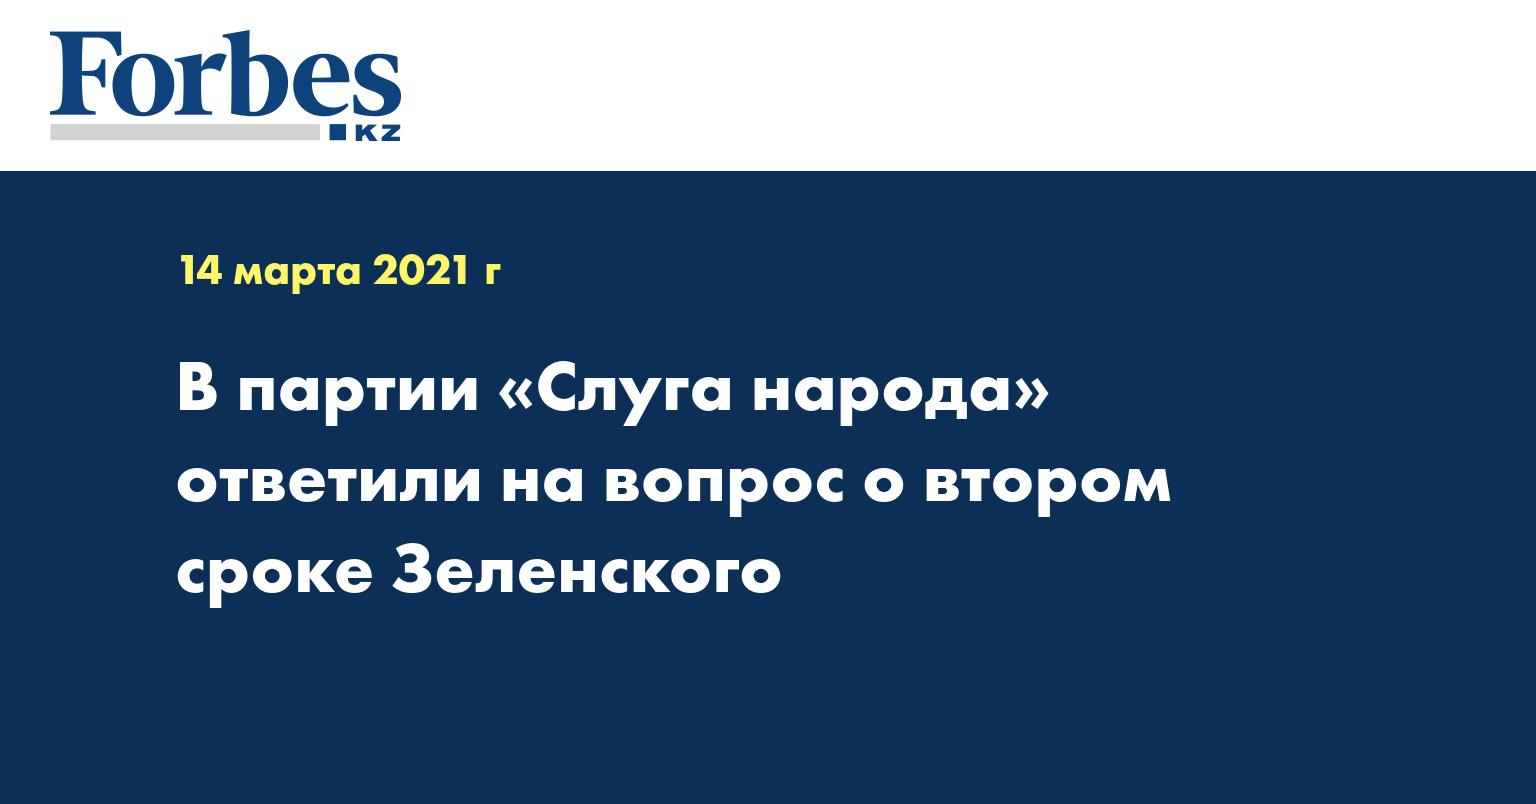 В партии «Слуга народа» ответили на вопрос о втором сроке Зеленского